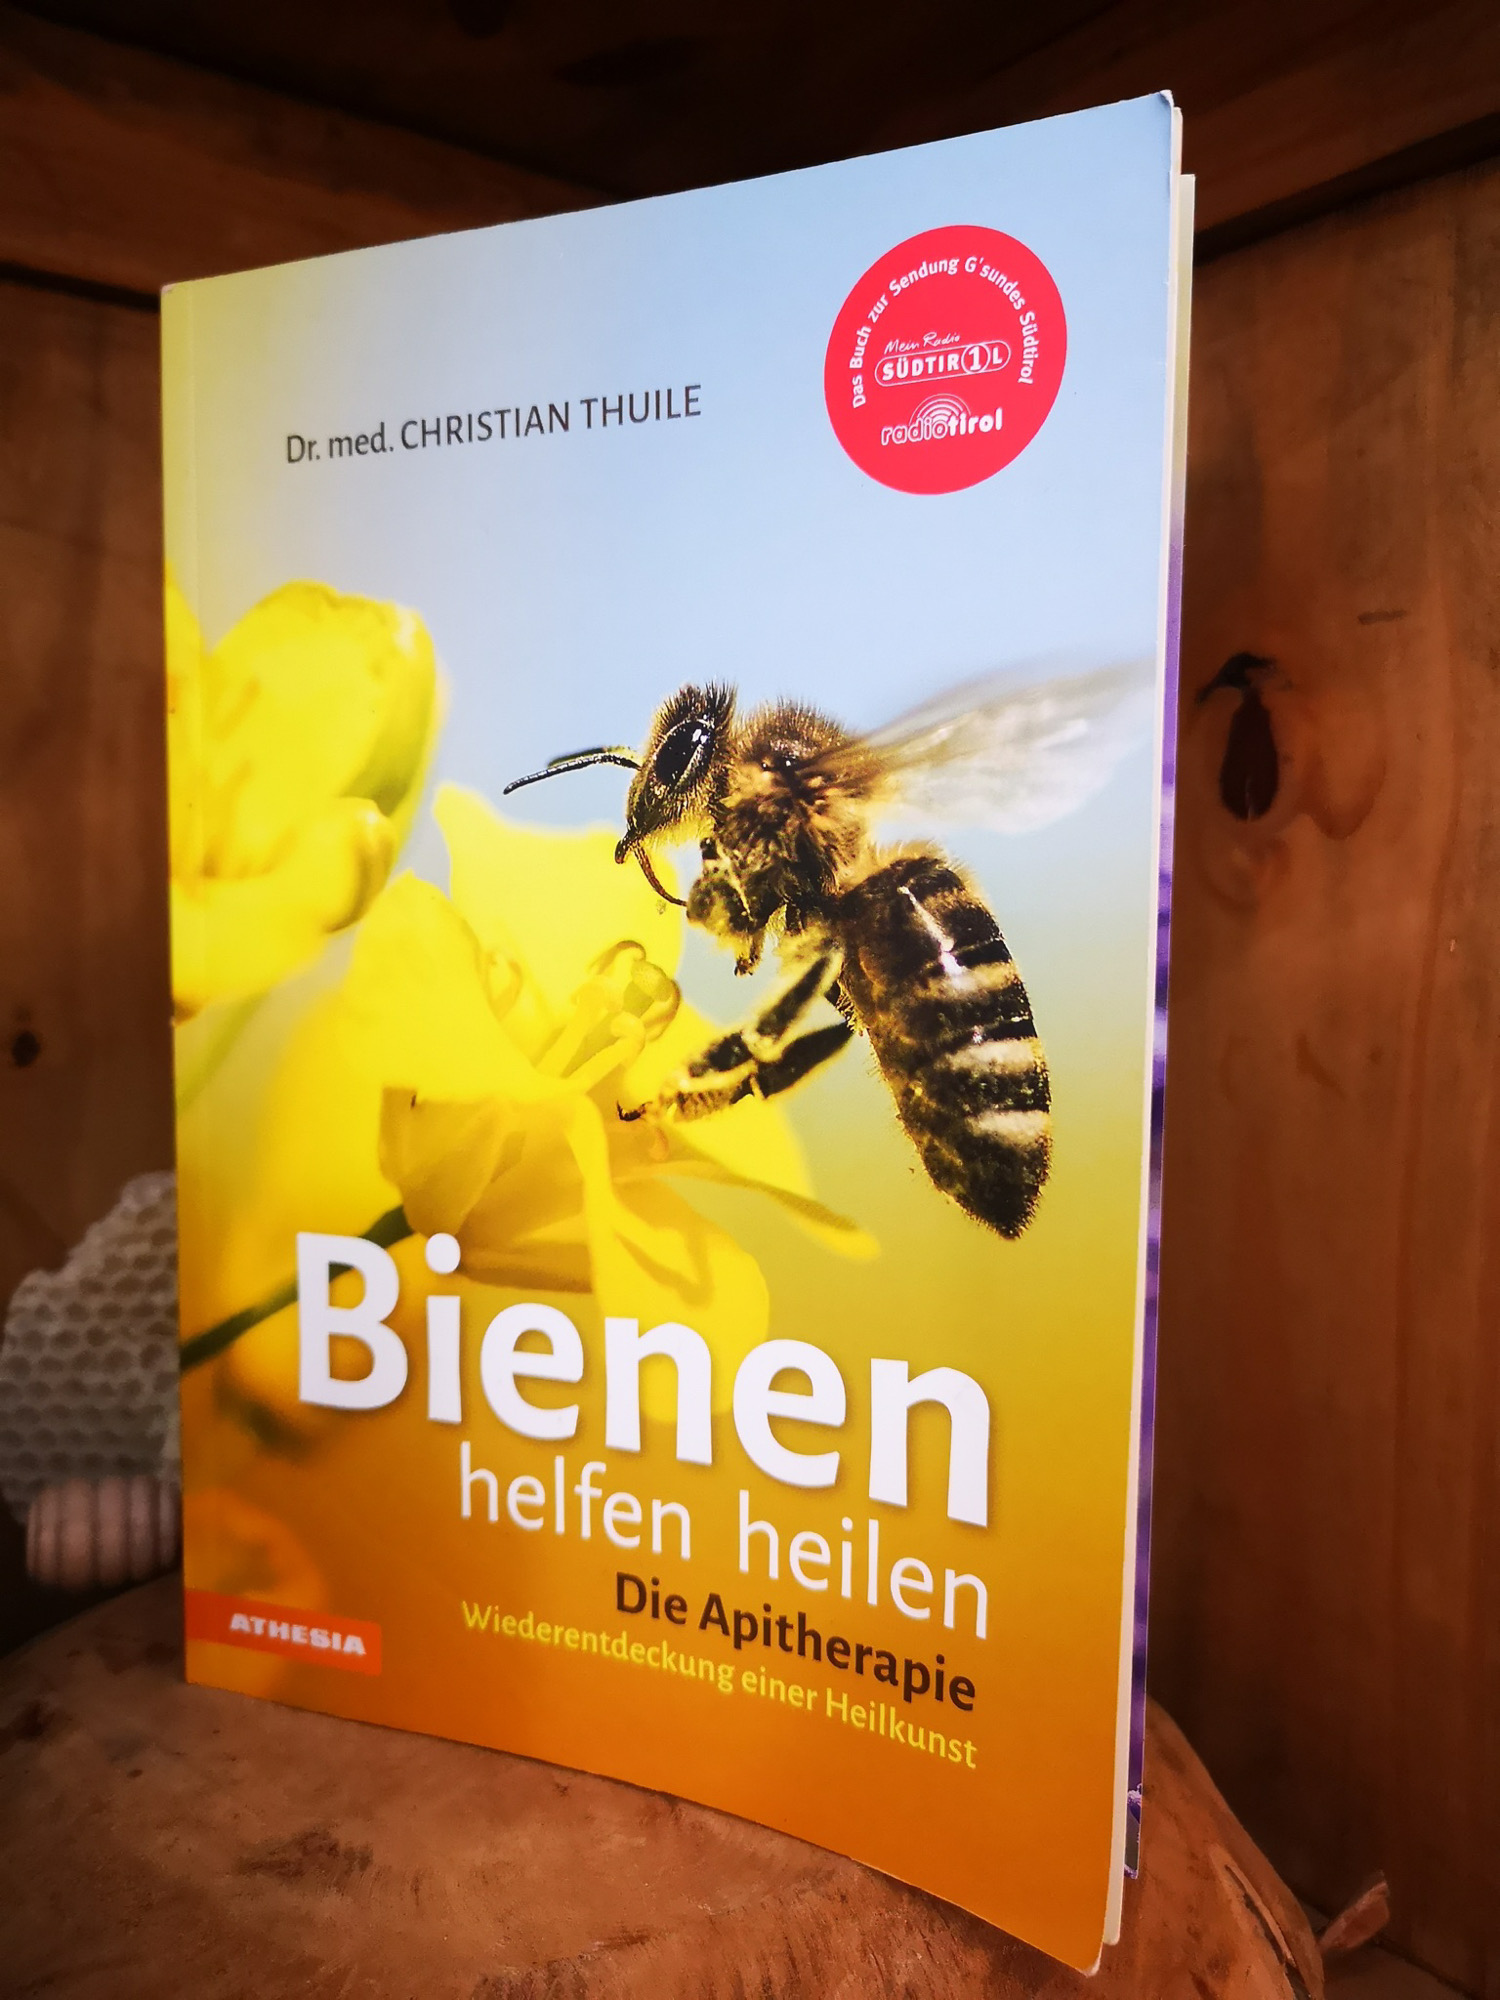 Imkerbuch, Imkern lernen, Imkerei Lektüre, Bienenbücher, Bücher über Bienen, Bienenwachs vielseitig verwenden, Bienen helfen heilen 